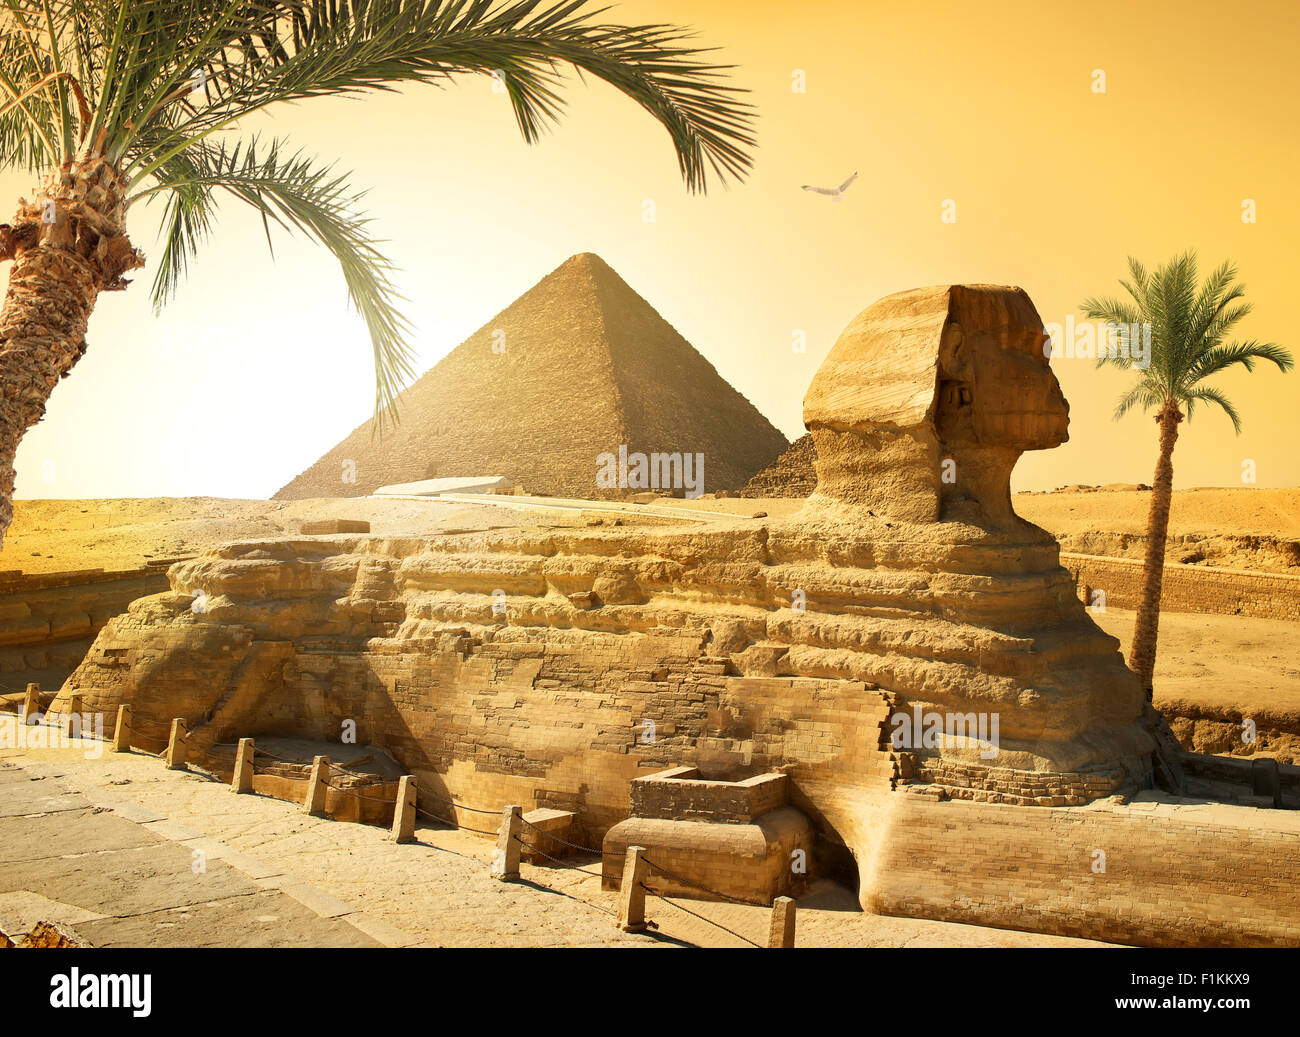 Le palme vicino a sfinge e piramide nel deserto egiziano Foto Stock